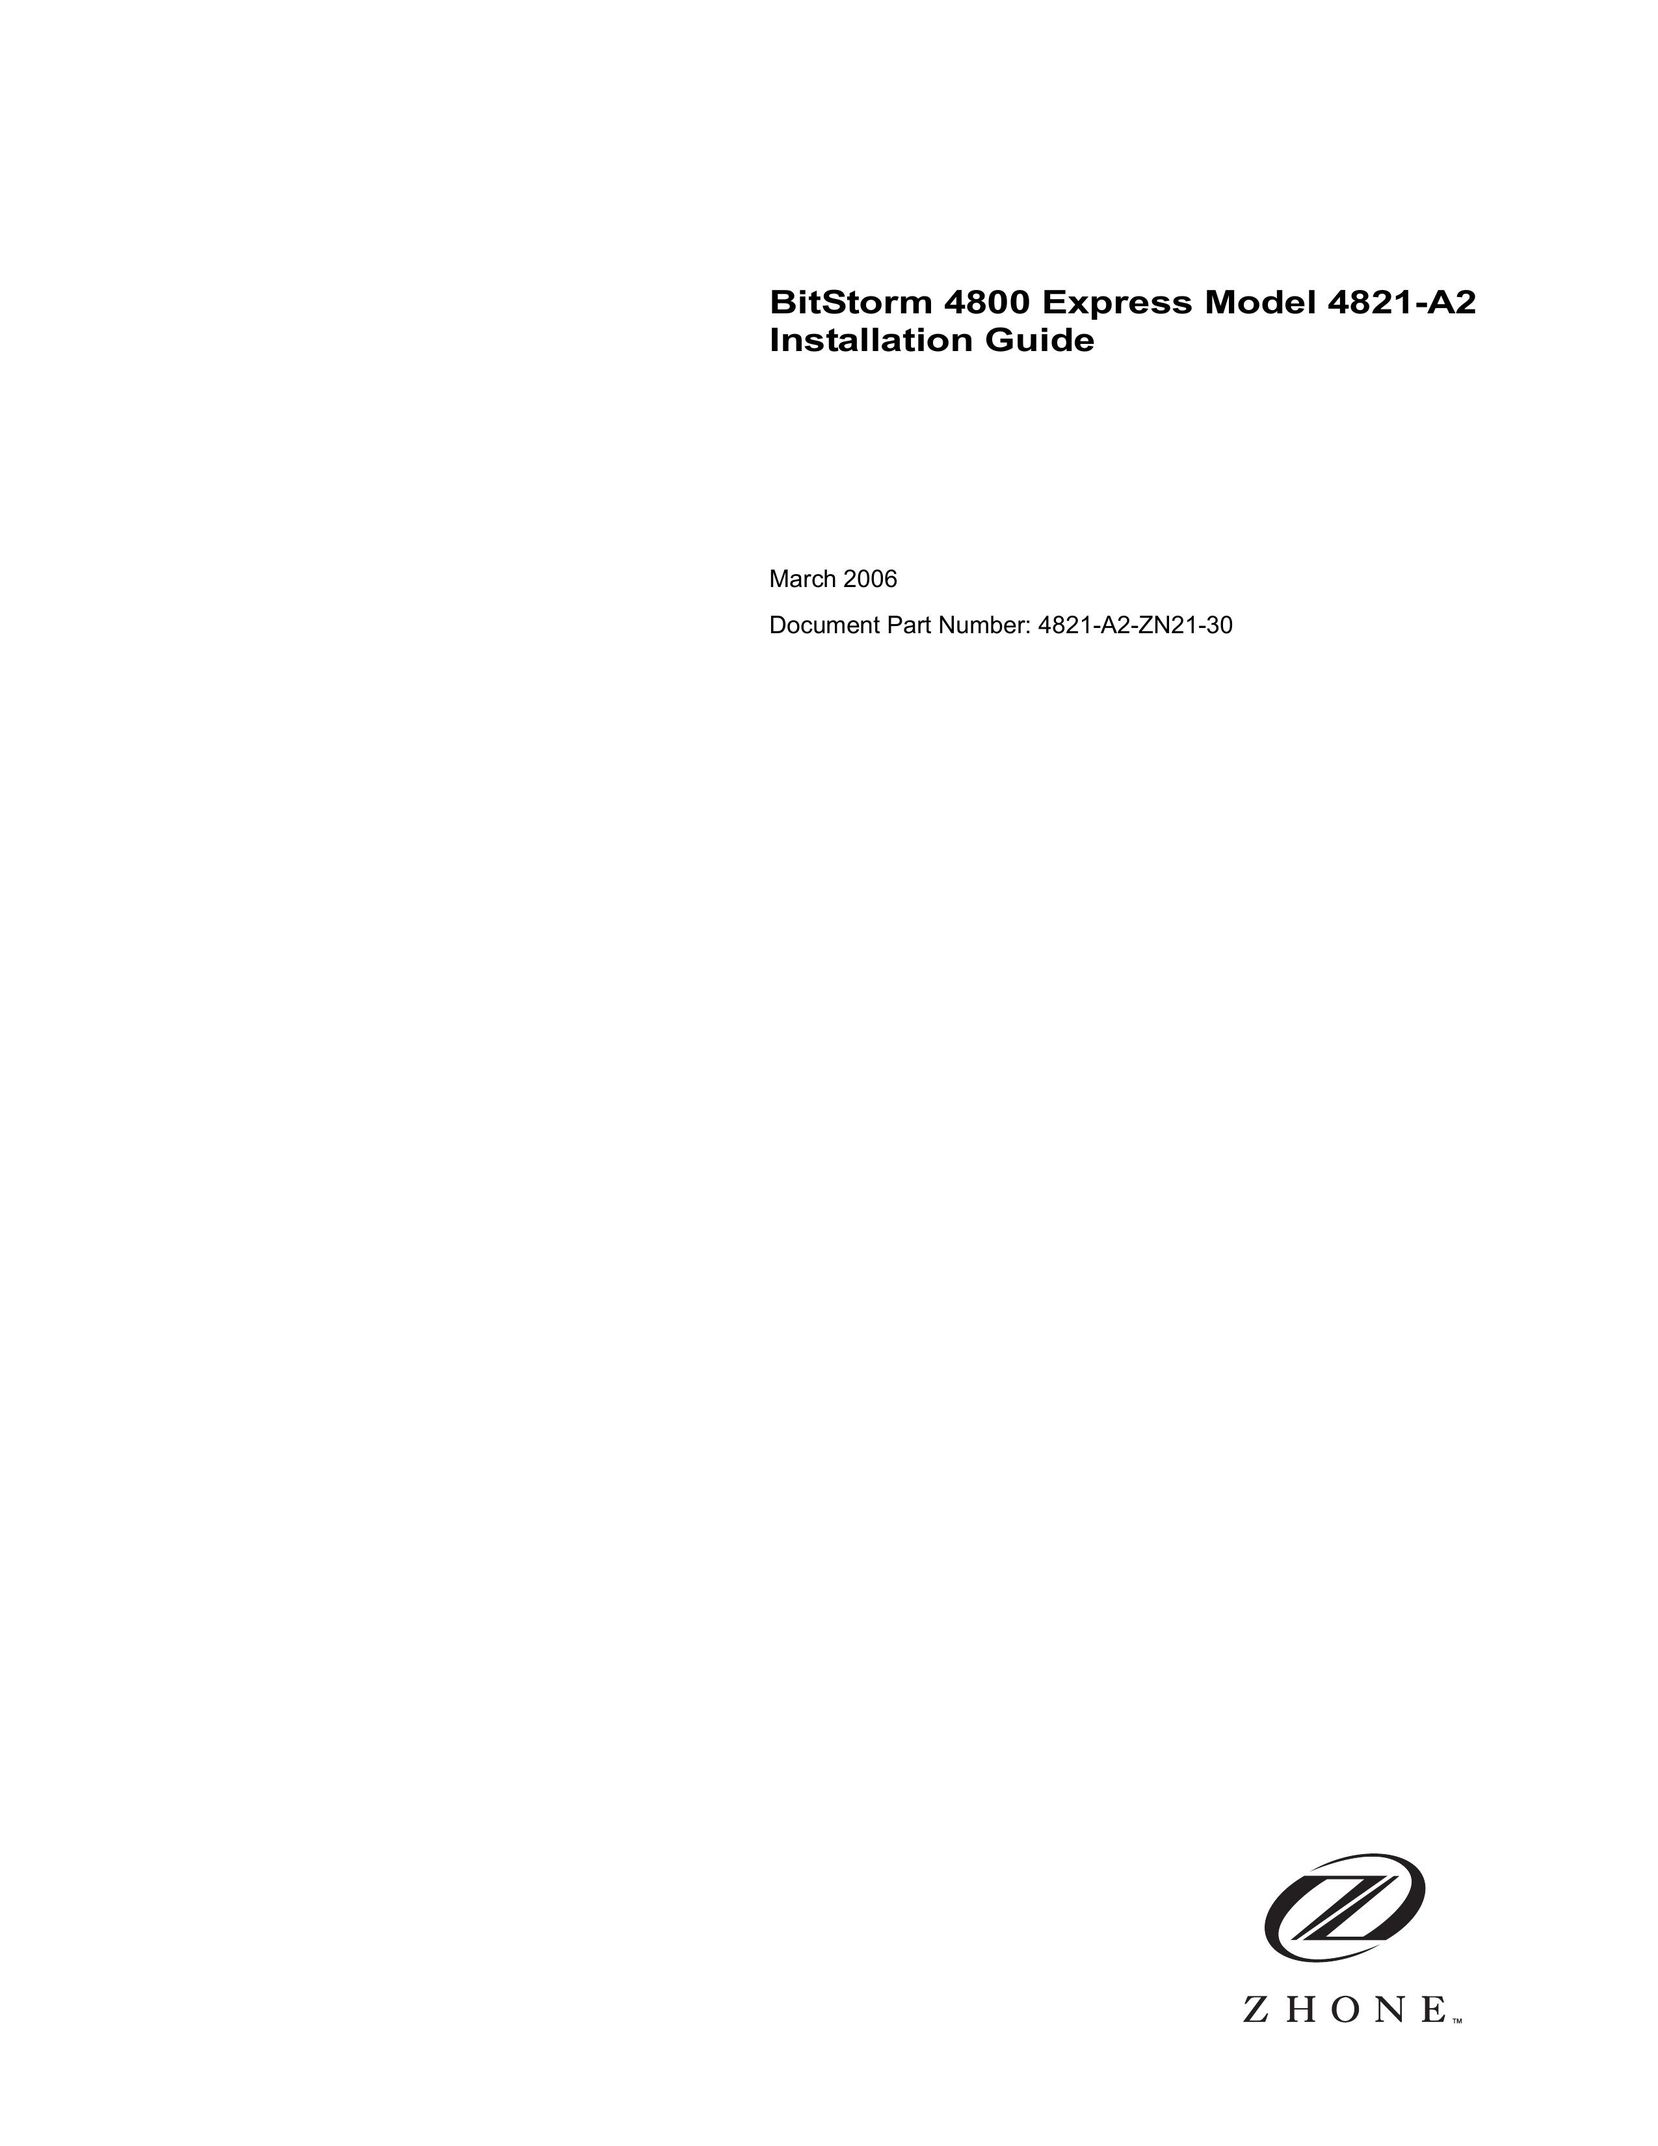 Zhone Technologies 4821-A2 Modem User Manual